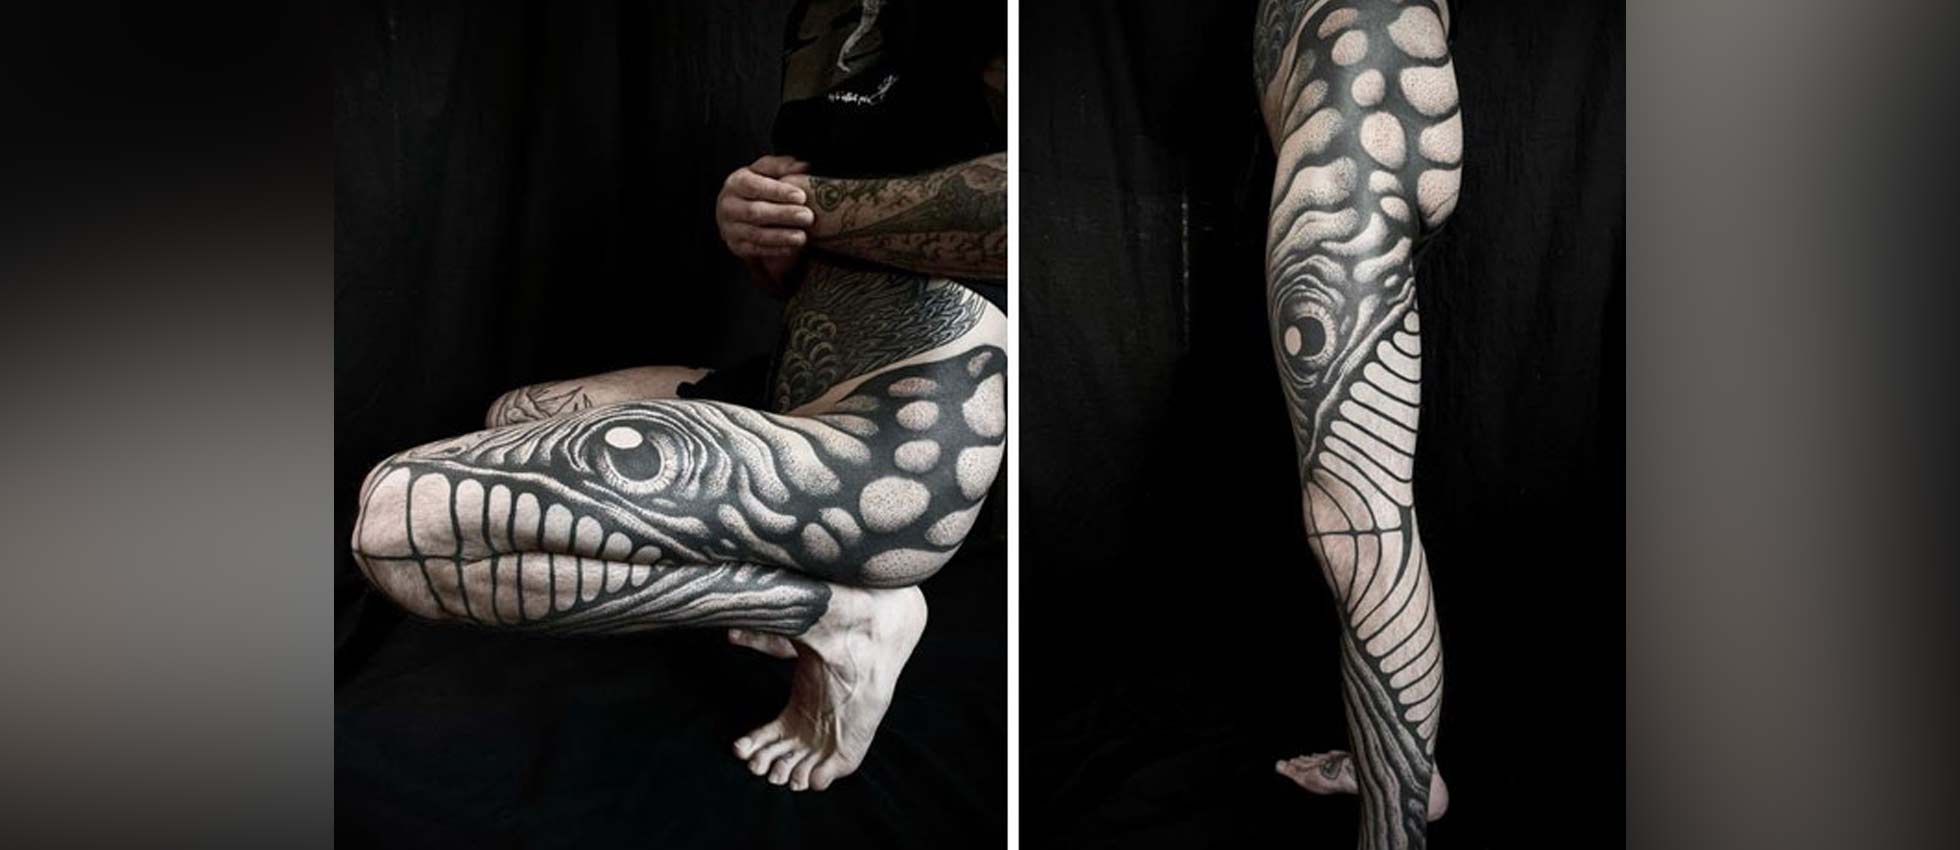 Estos tatuajes cambian de forma al doblar codos y rodillas